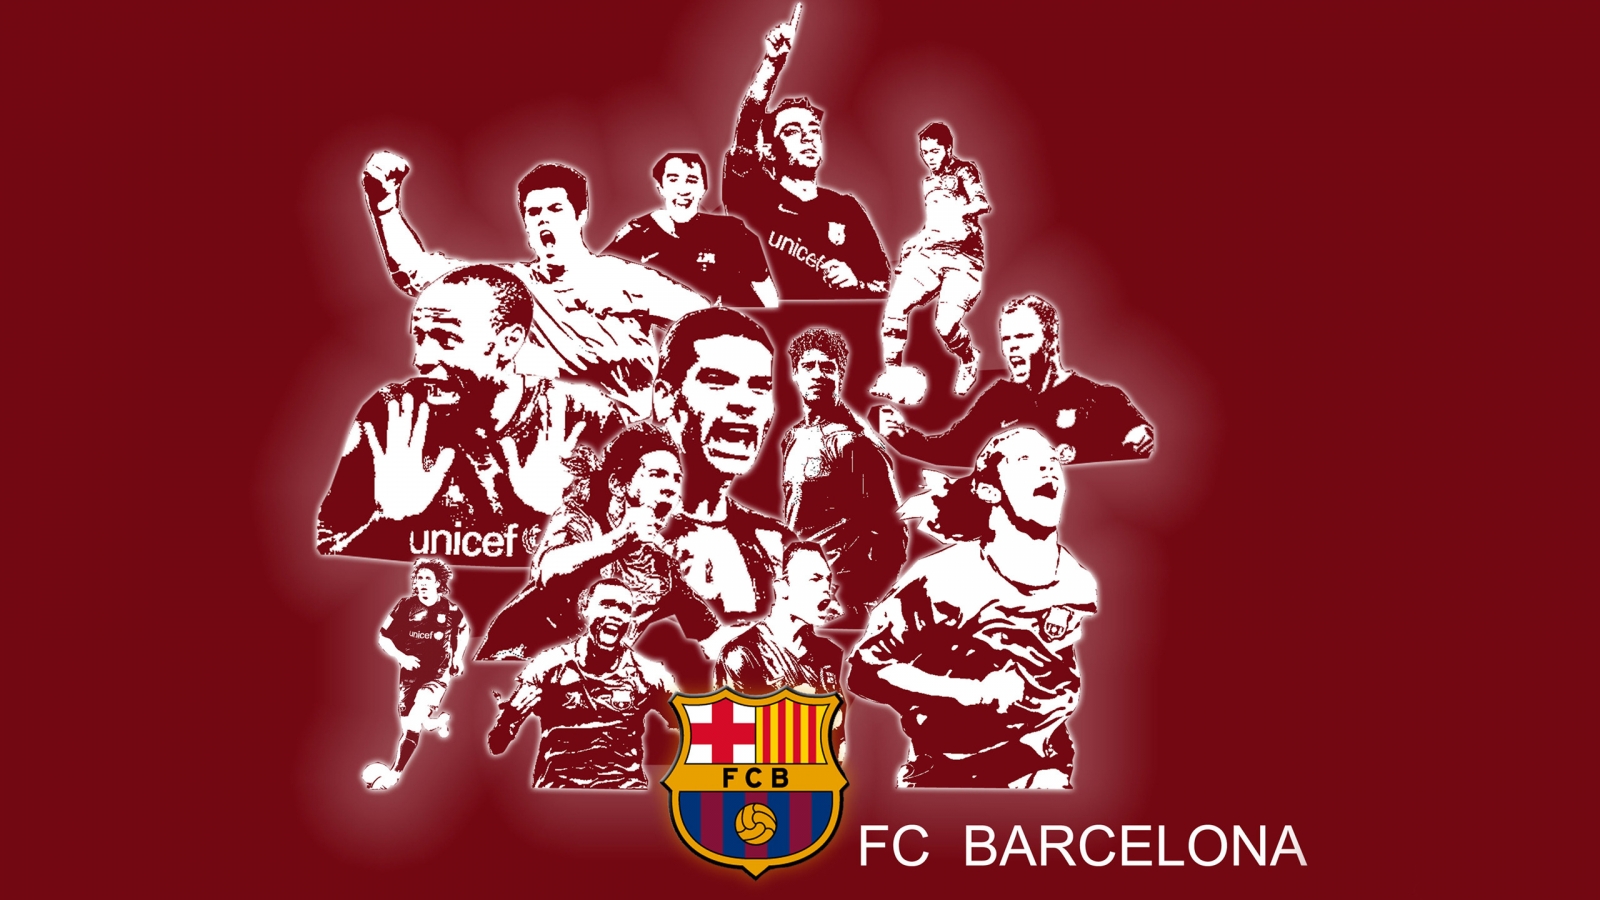 FC Barcelona for 1600 x 900 HDTV resolution